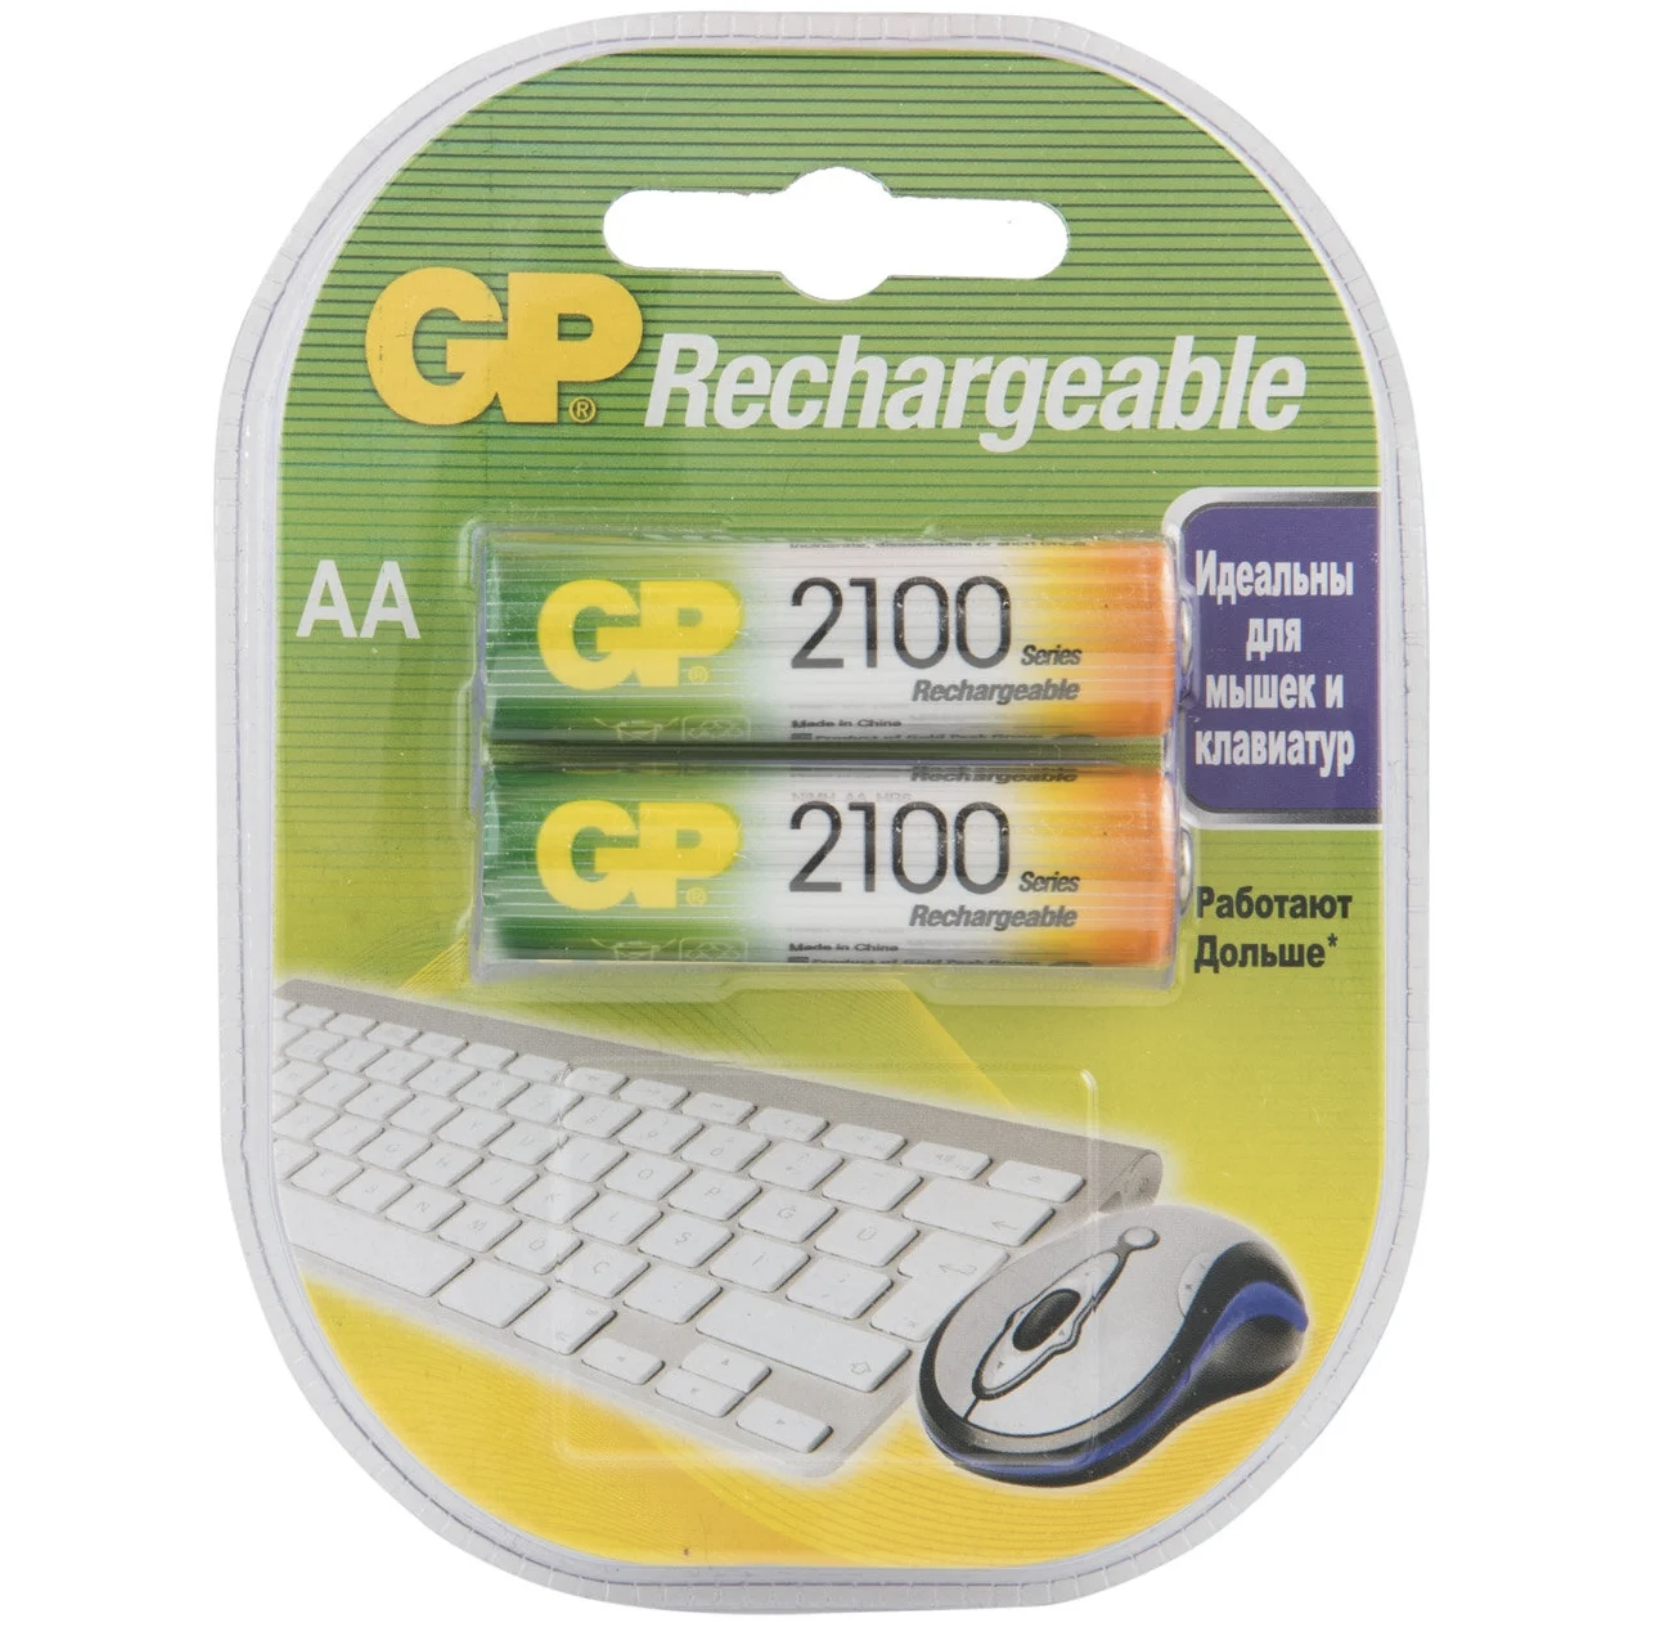  GP -  Rechargeable AA 2100 / 2 